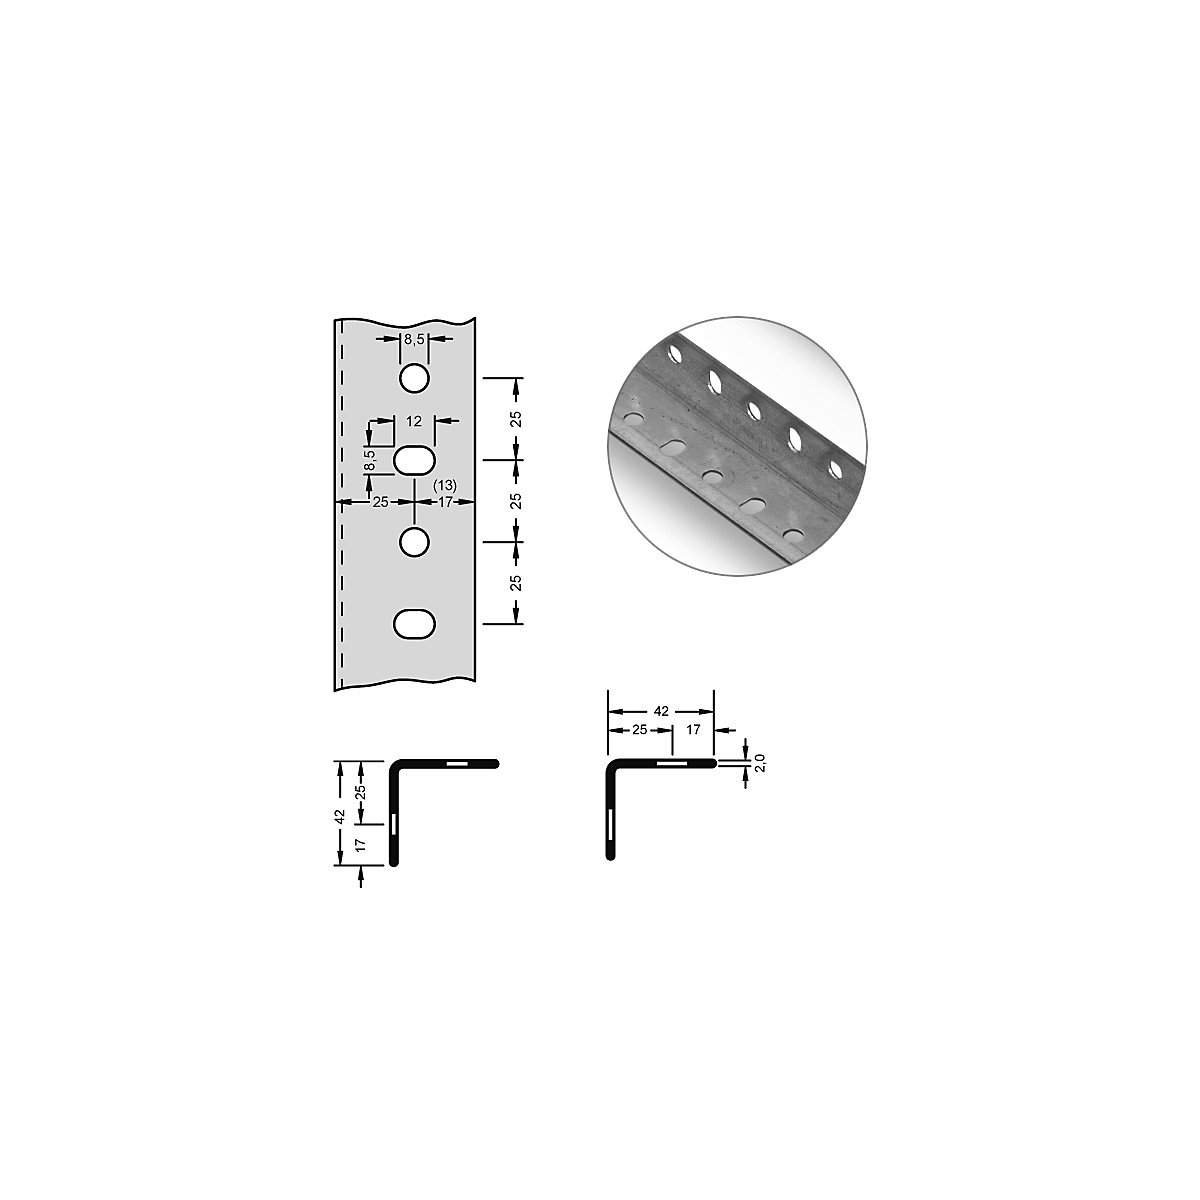 hofe – Stalowy profil narożny do systemu modułowego, 42 x 42 x 2 mm, dł. 2 m, ocynkowanie, opak. 10 szt.